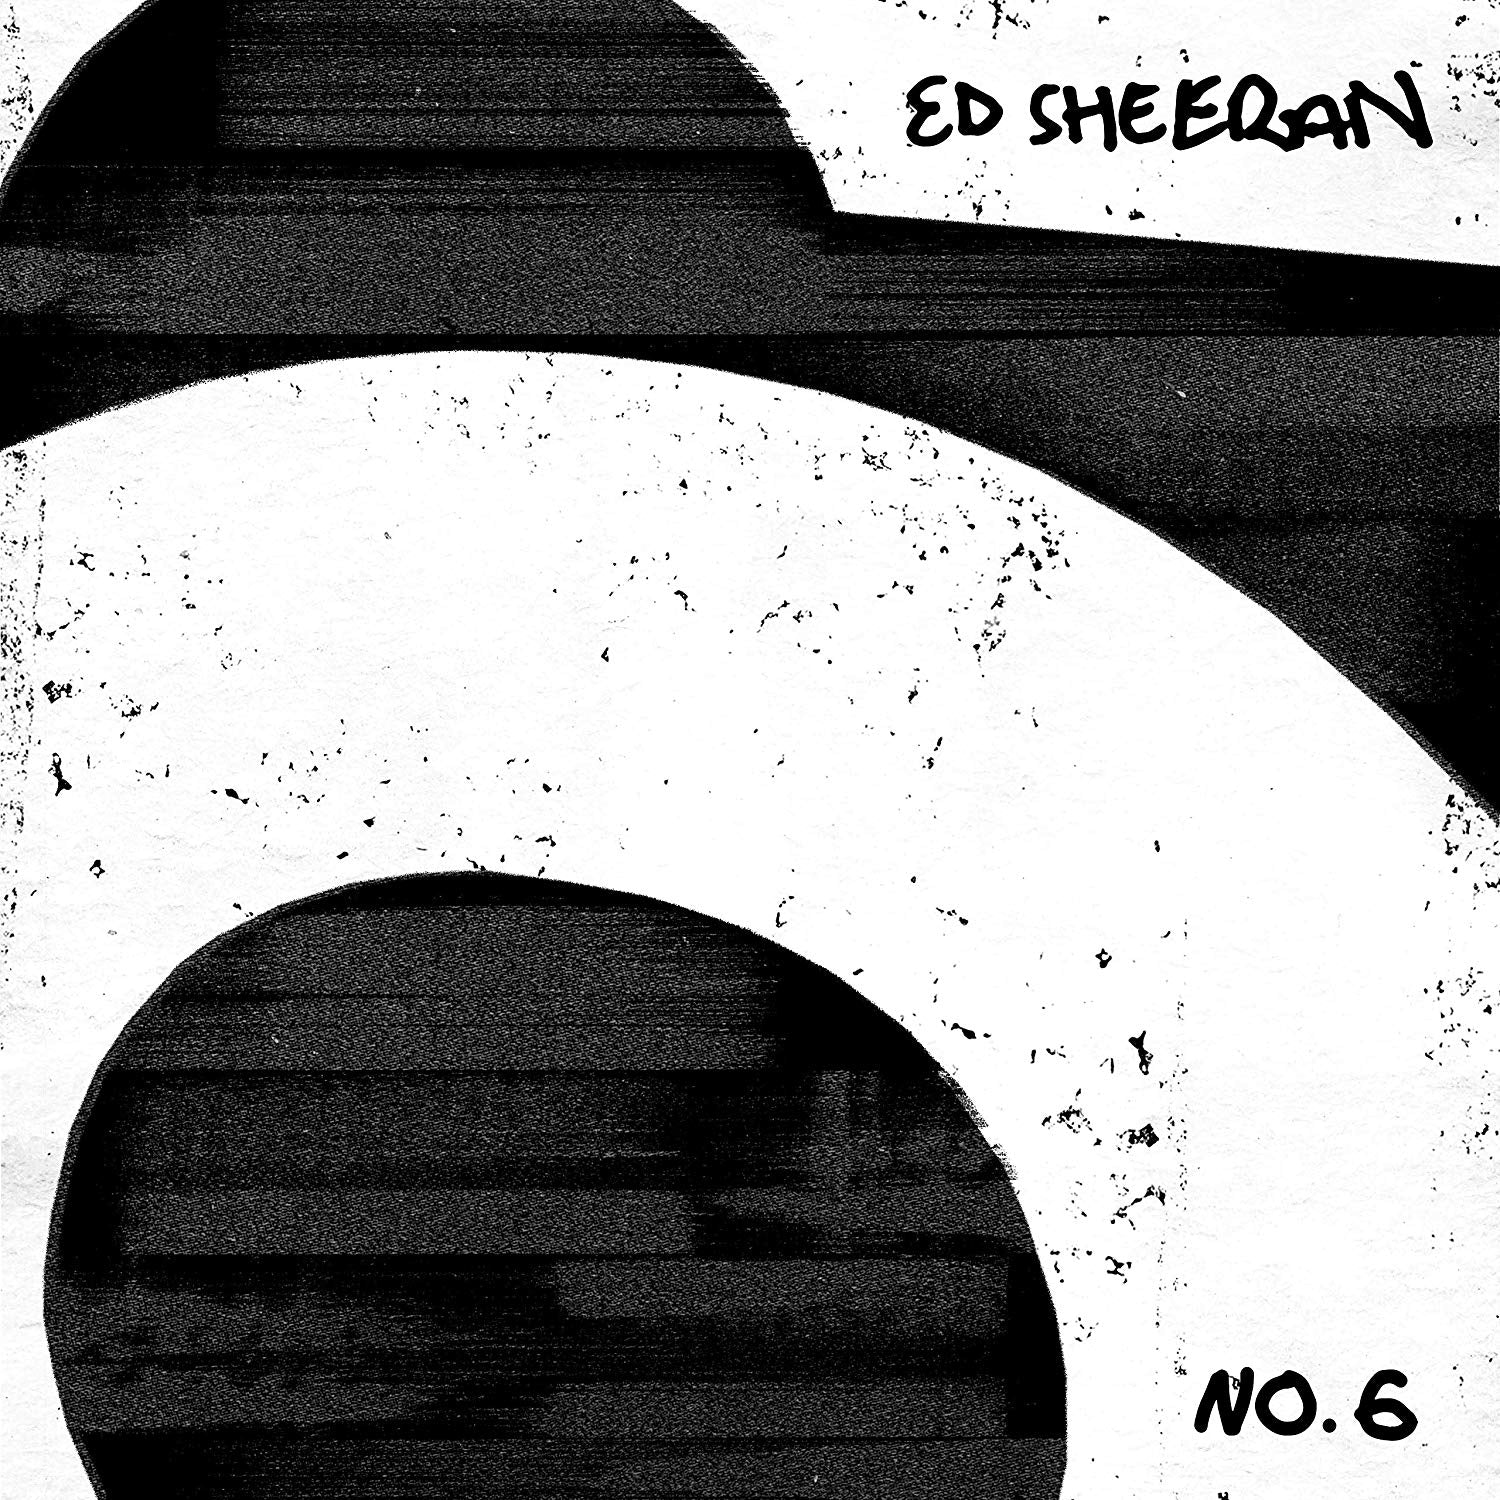 Ed Sheeran No. 6 Collaborations Project Vinyl